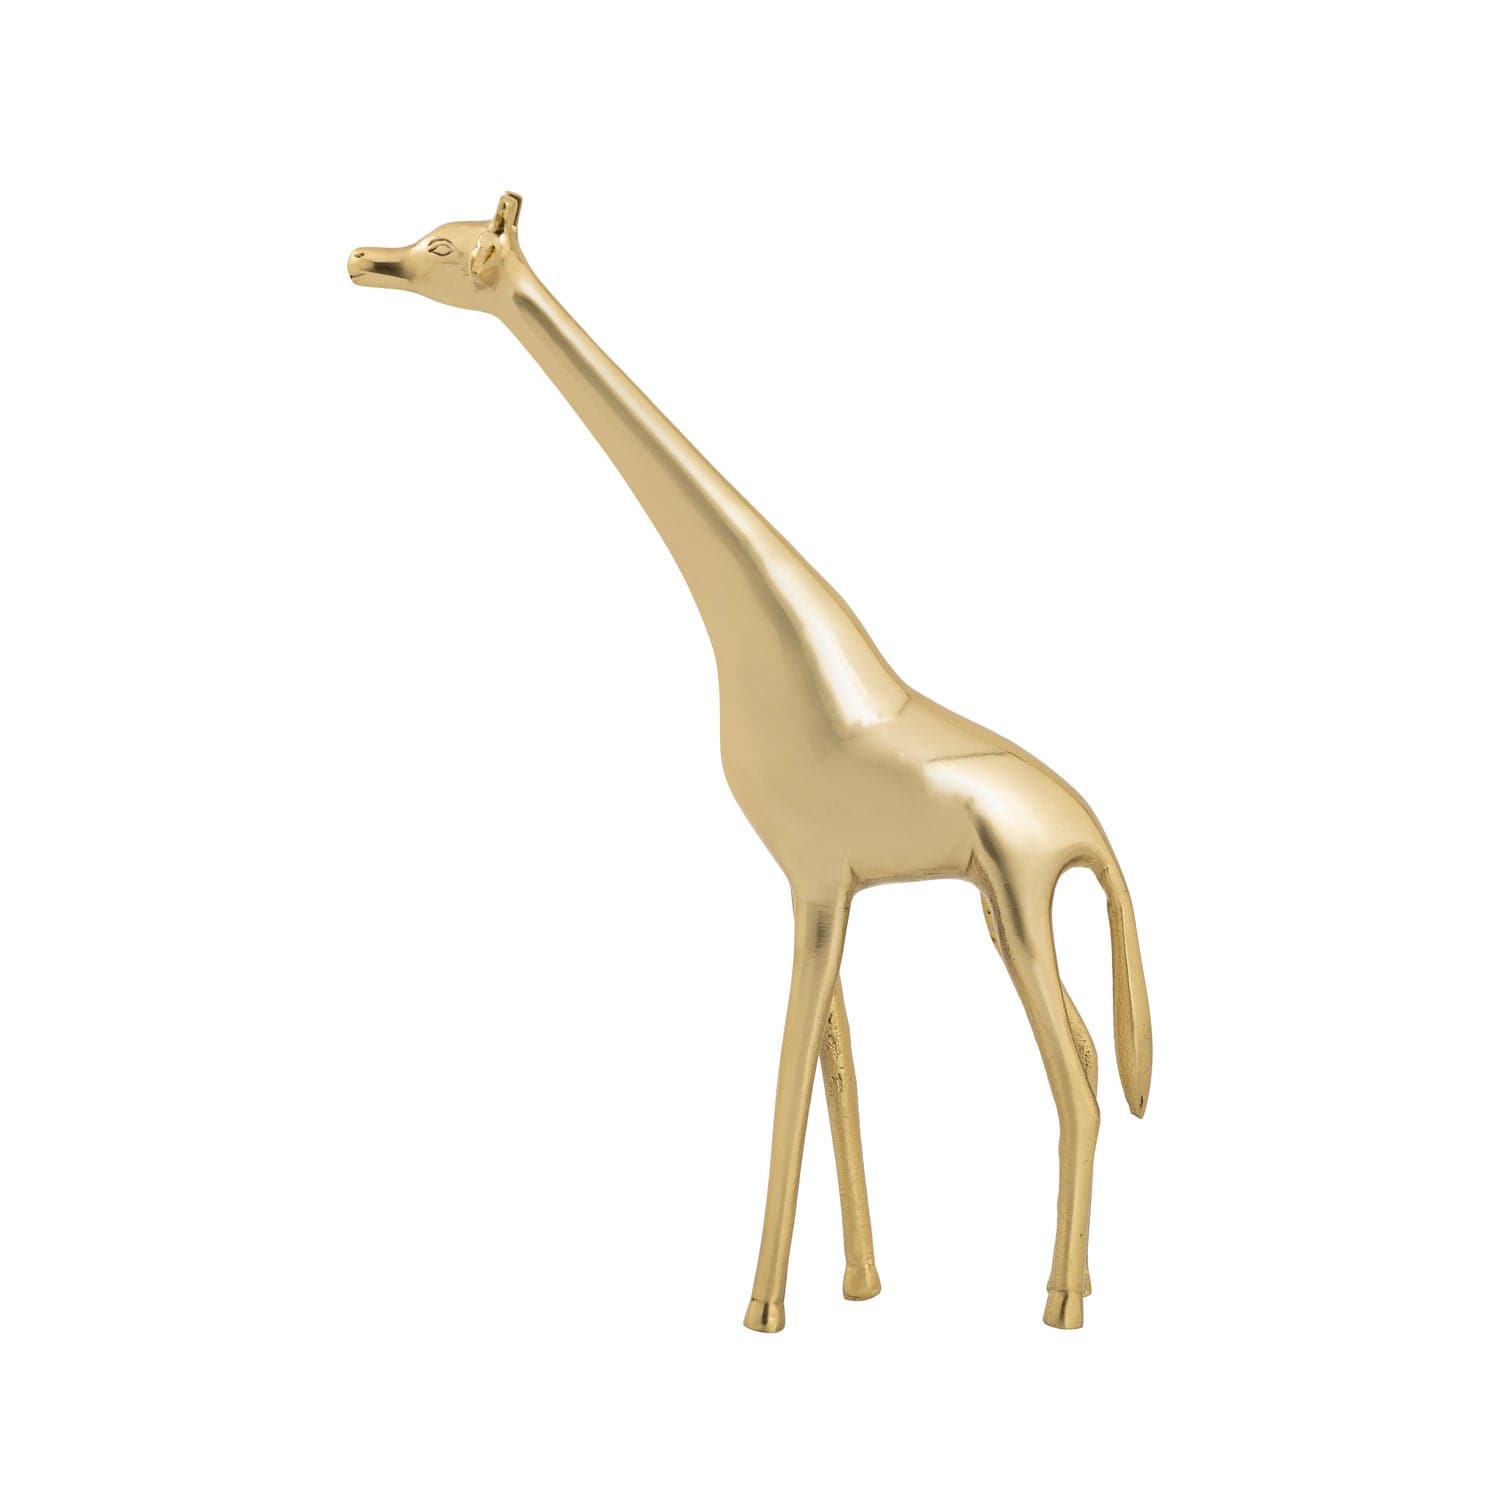 ELK Home - H0807-9268 - Sculpture - Brass Giraffe - Polished Brass